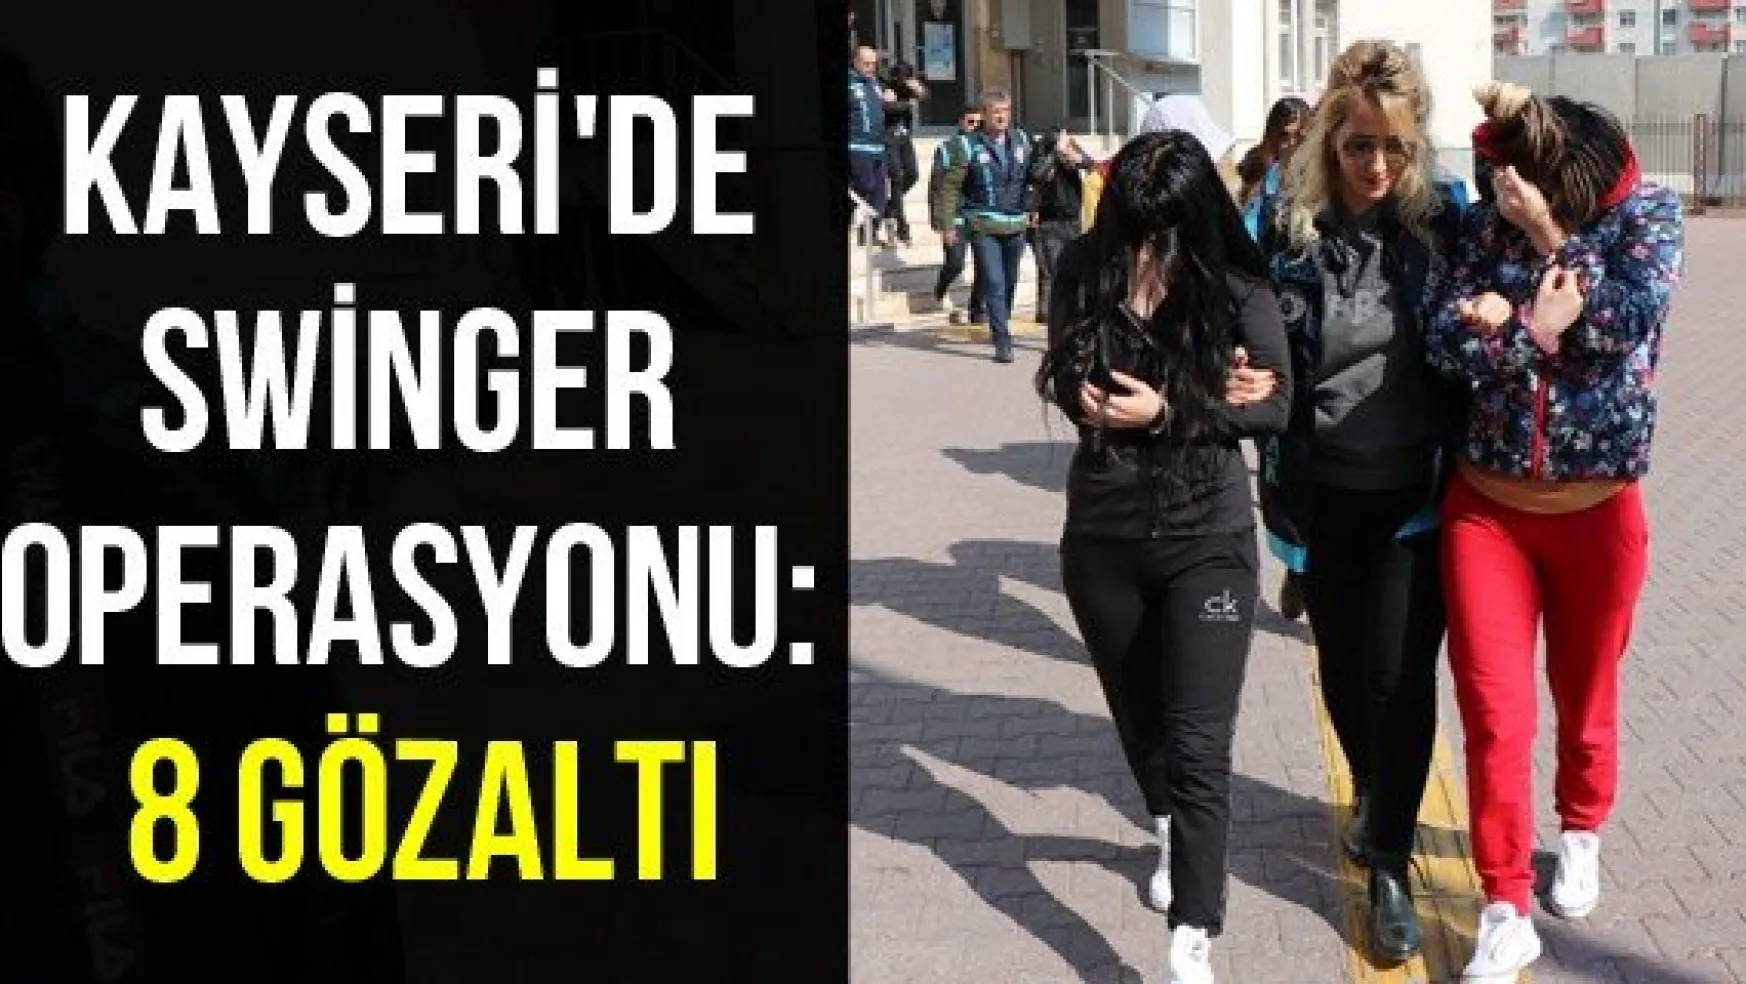 Kayseri'de swinger operasyonu: 8 gözaltı